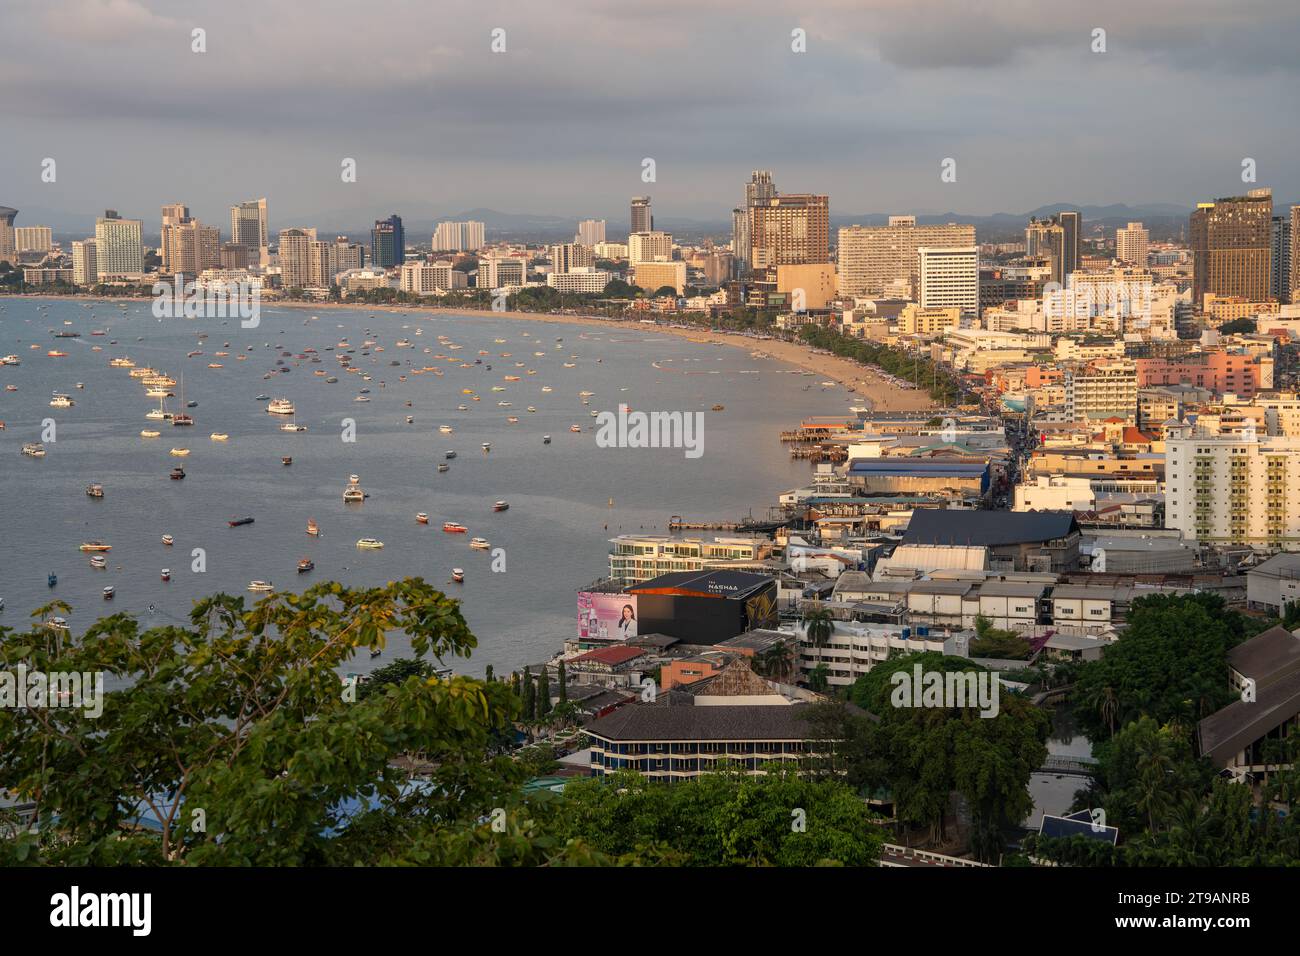 Il paesaggio urbano del distretto di Pattaya Chonburi in Thailandia nel sud-est asiatico Foto Stock